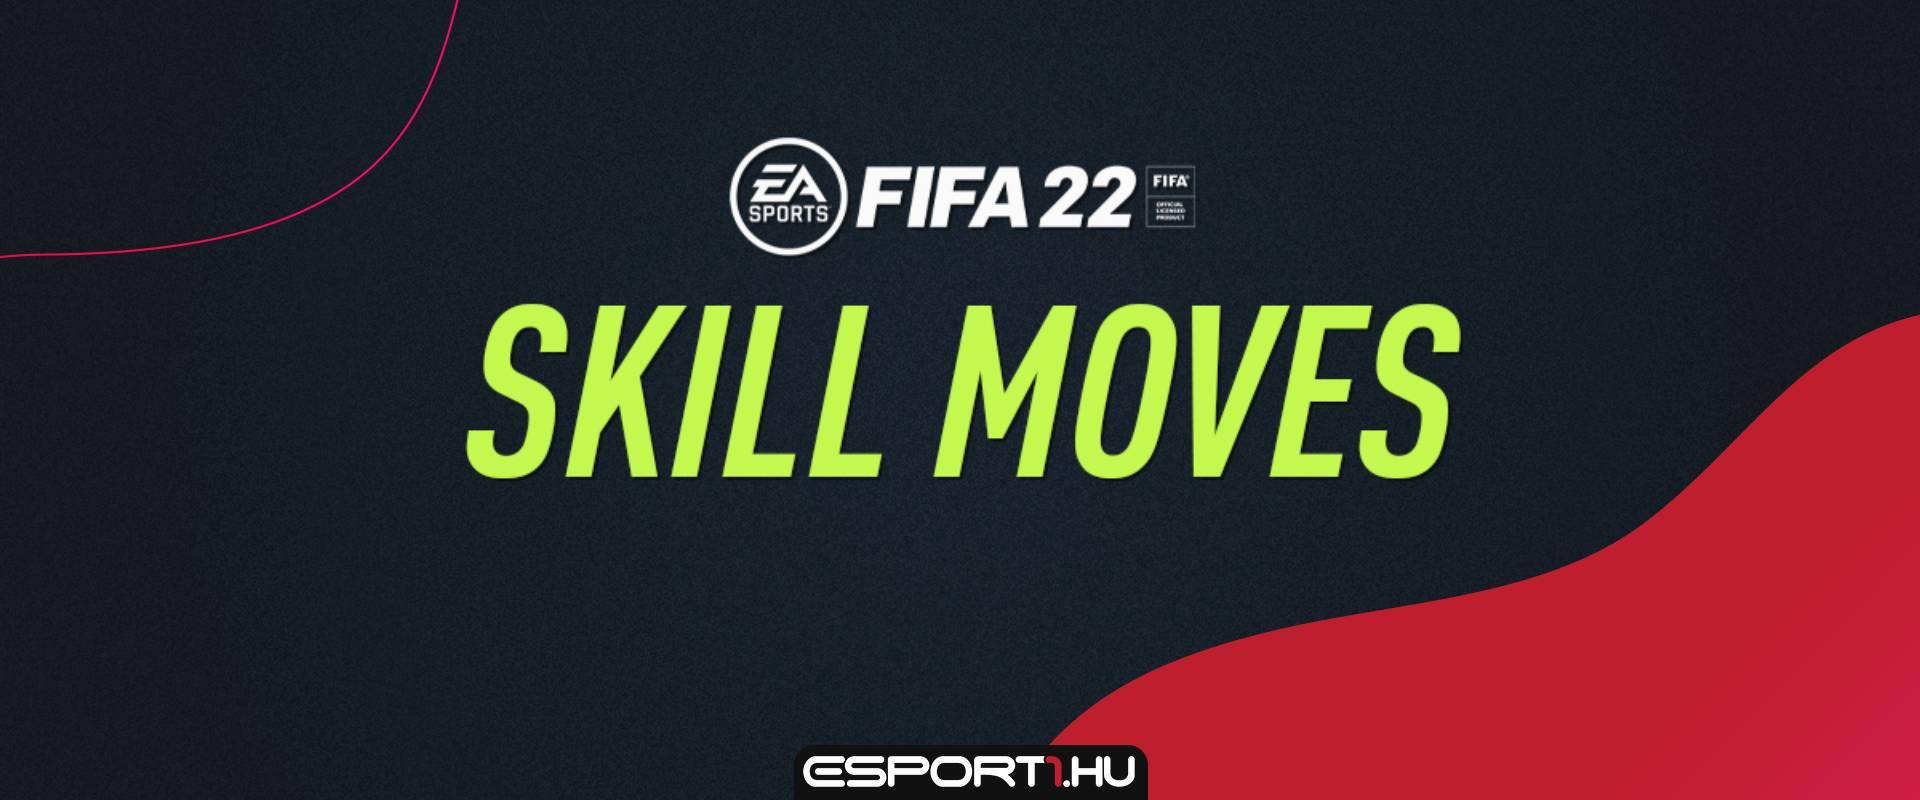 Több új skill moves is bemutatkozik a FIFA 22-ben